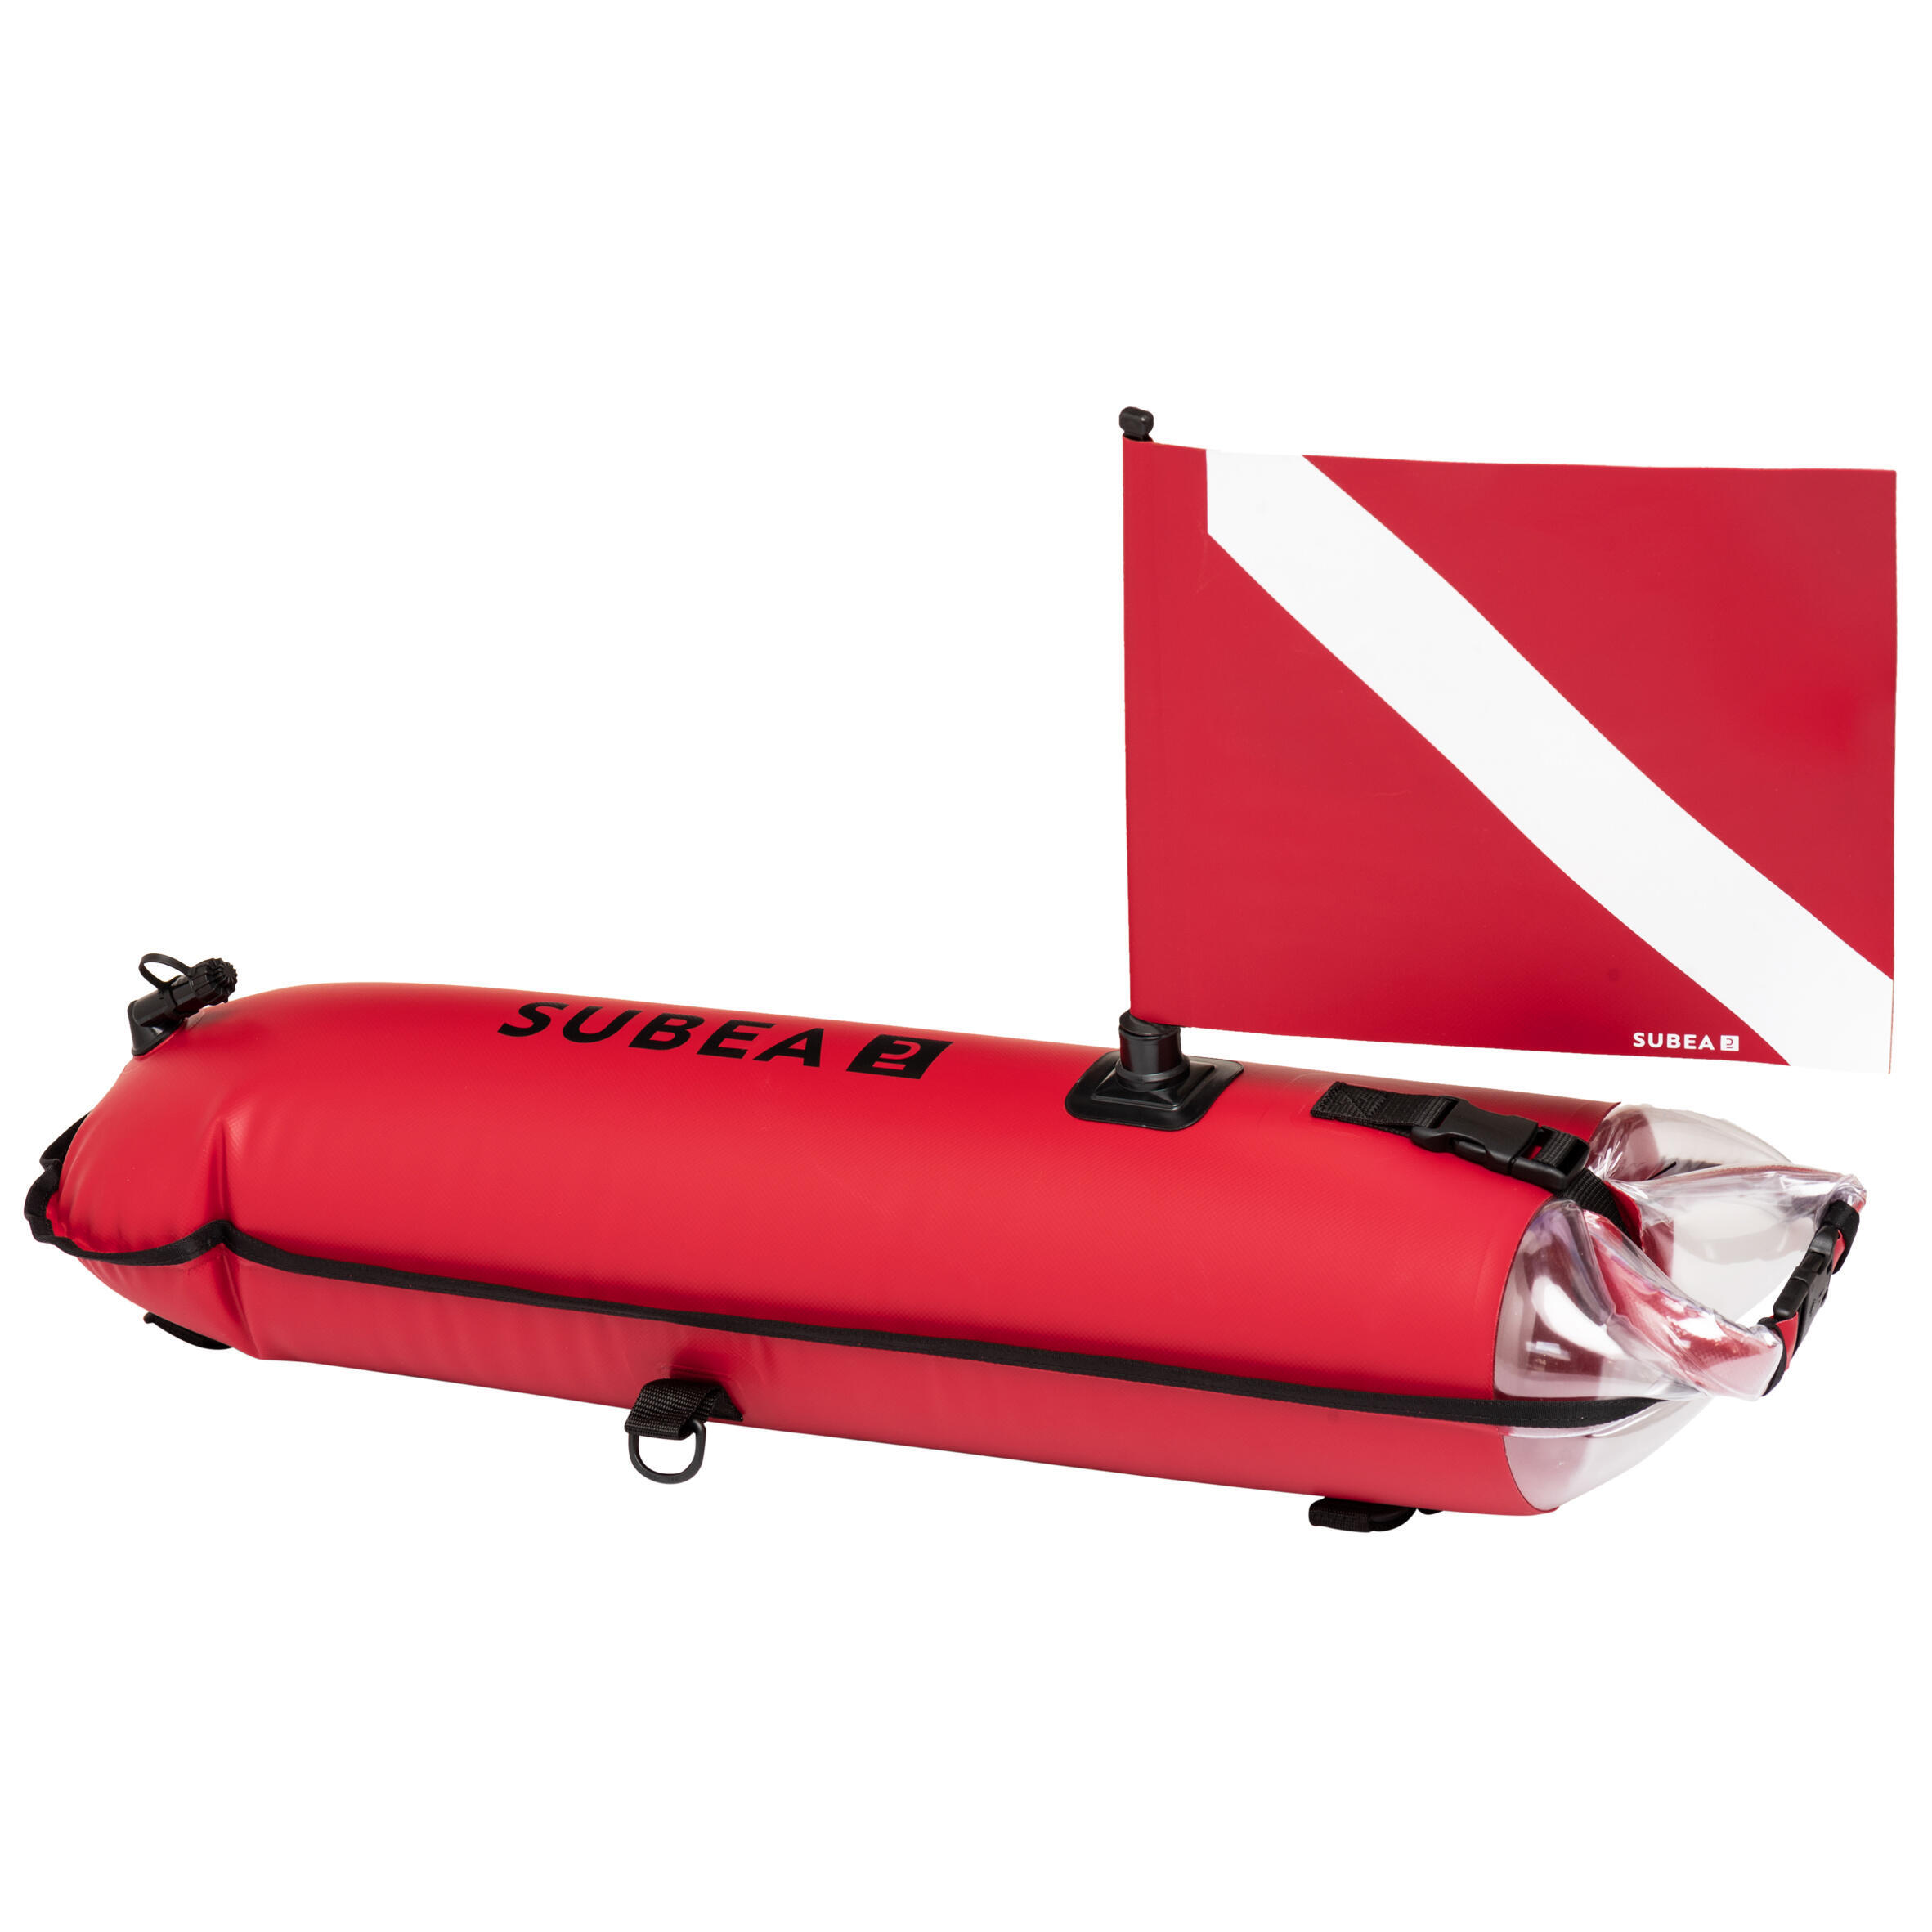 Сигнальный буй SPF 500 водонепроницаемая сумка для фридайвинга SUBEA, кораллово-красный